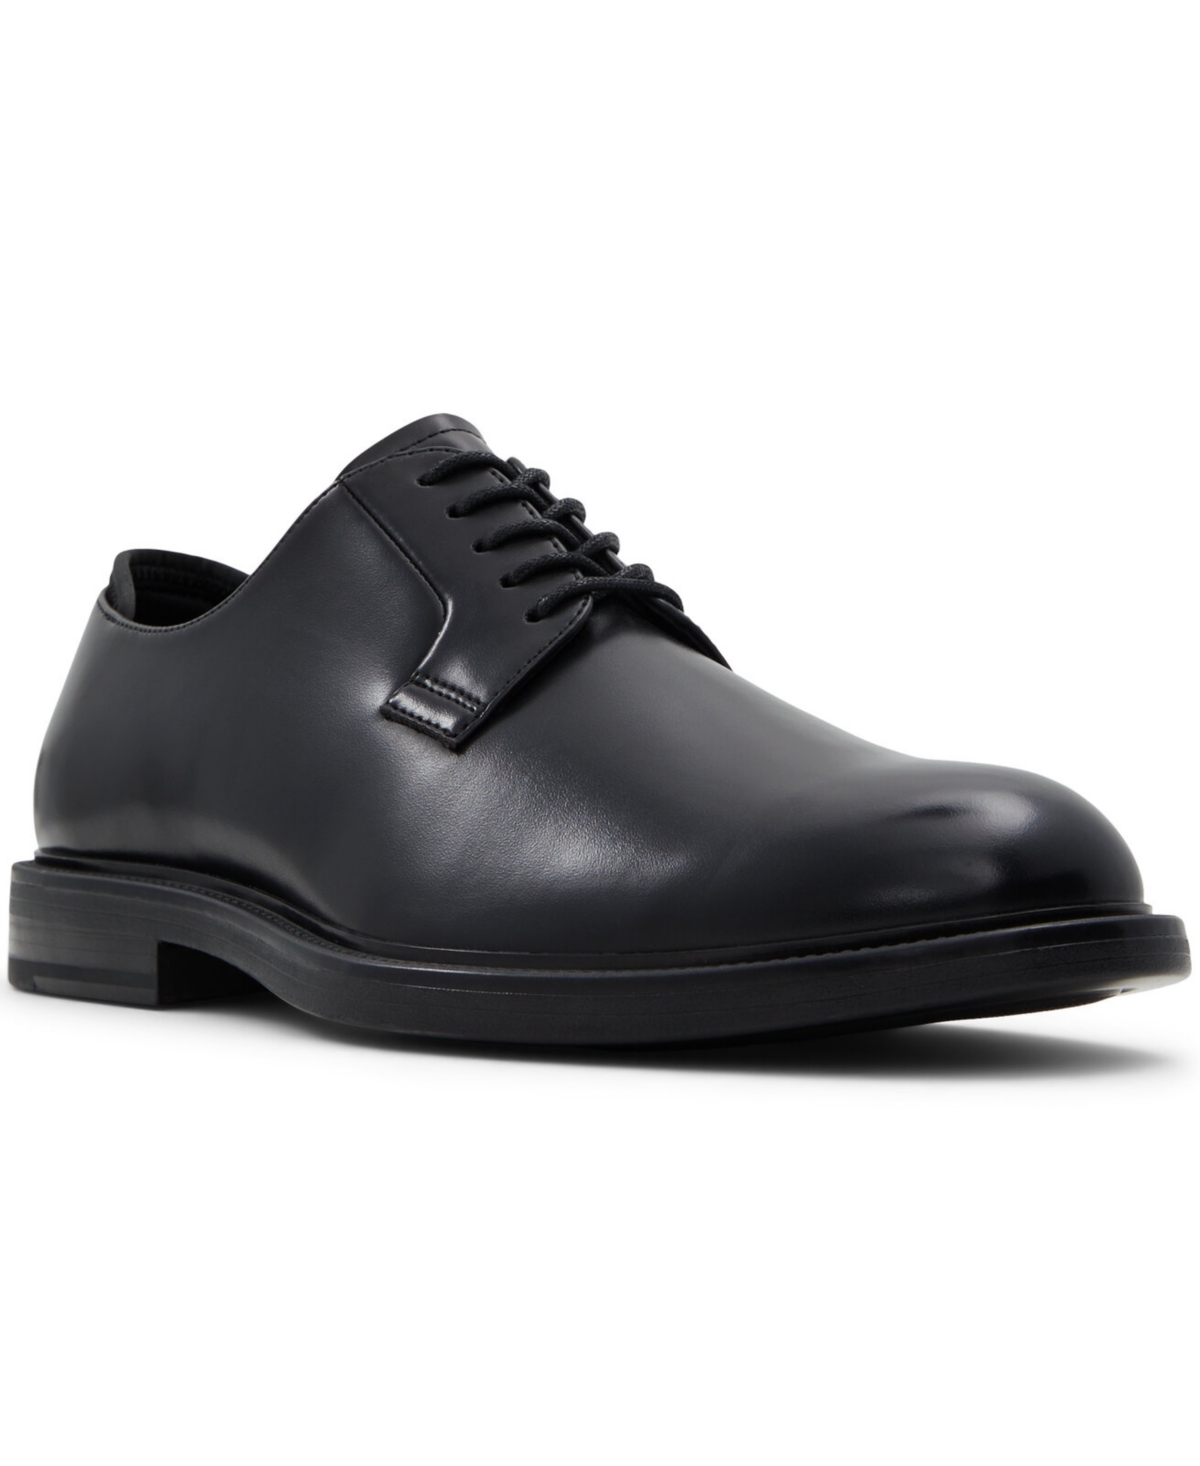 Men's Maisson Lace Up Derby Shoes - Black